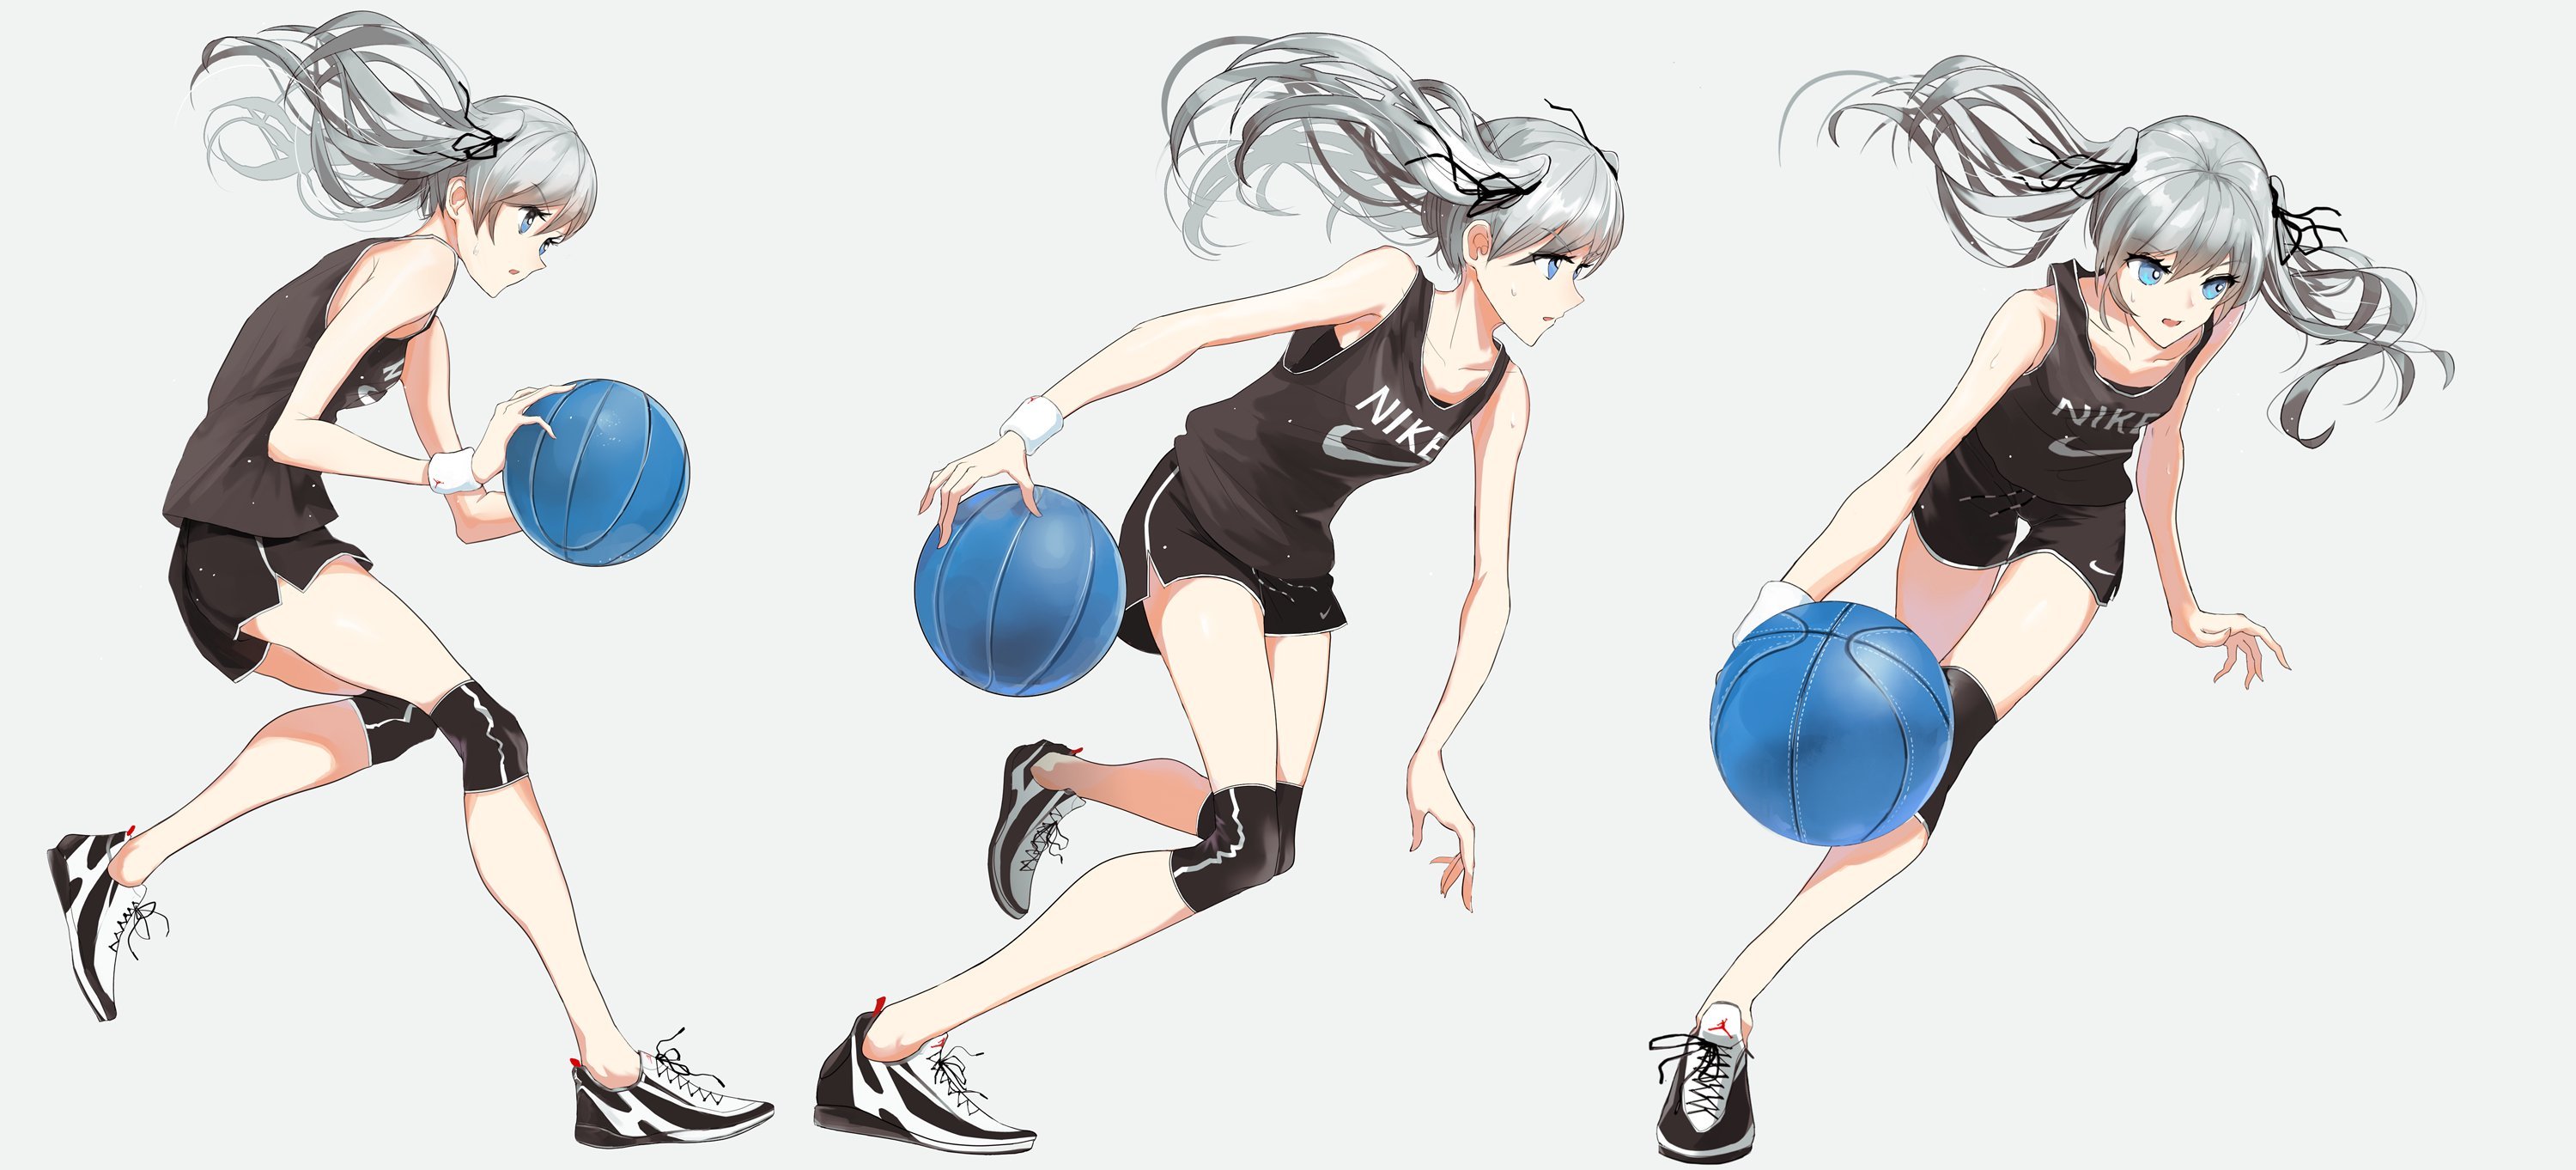 Волейбол мяч рисунки в аниме стиле фото